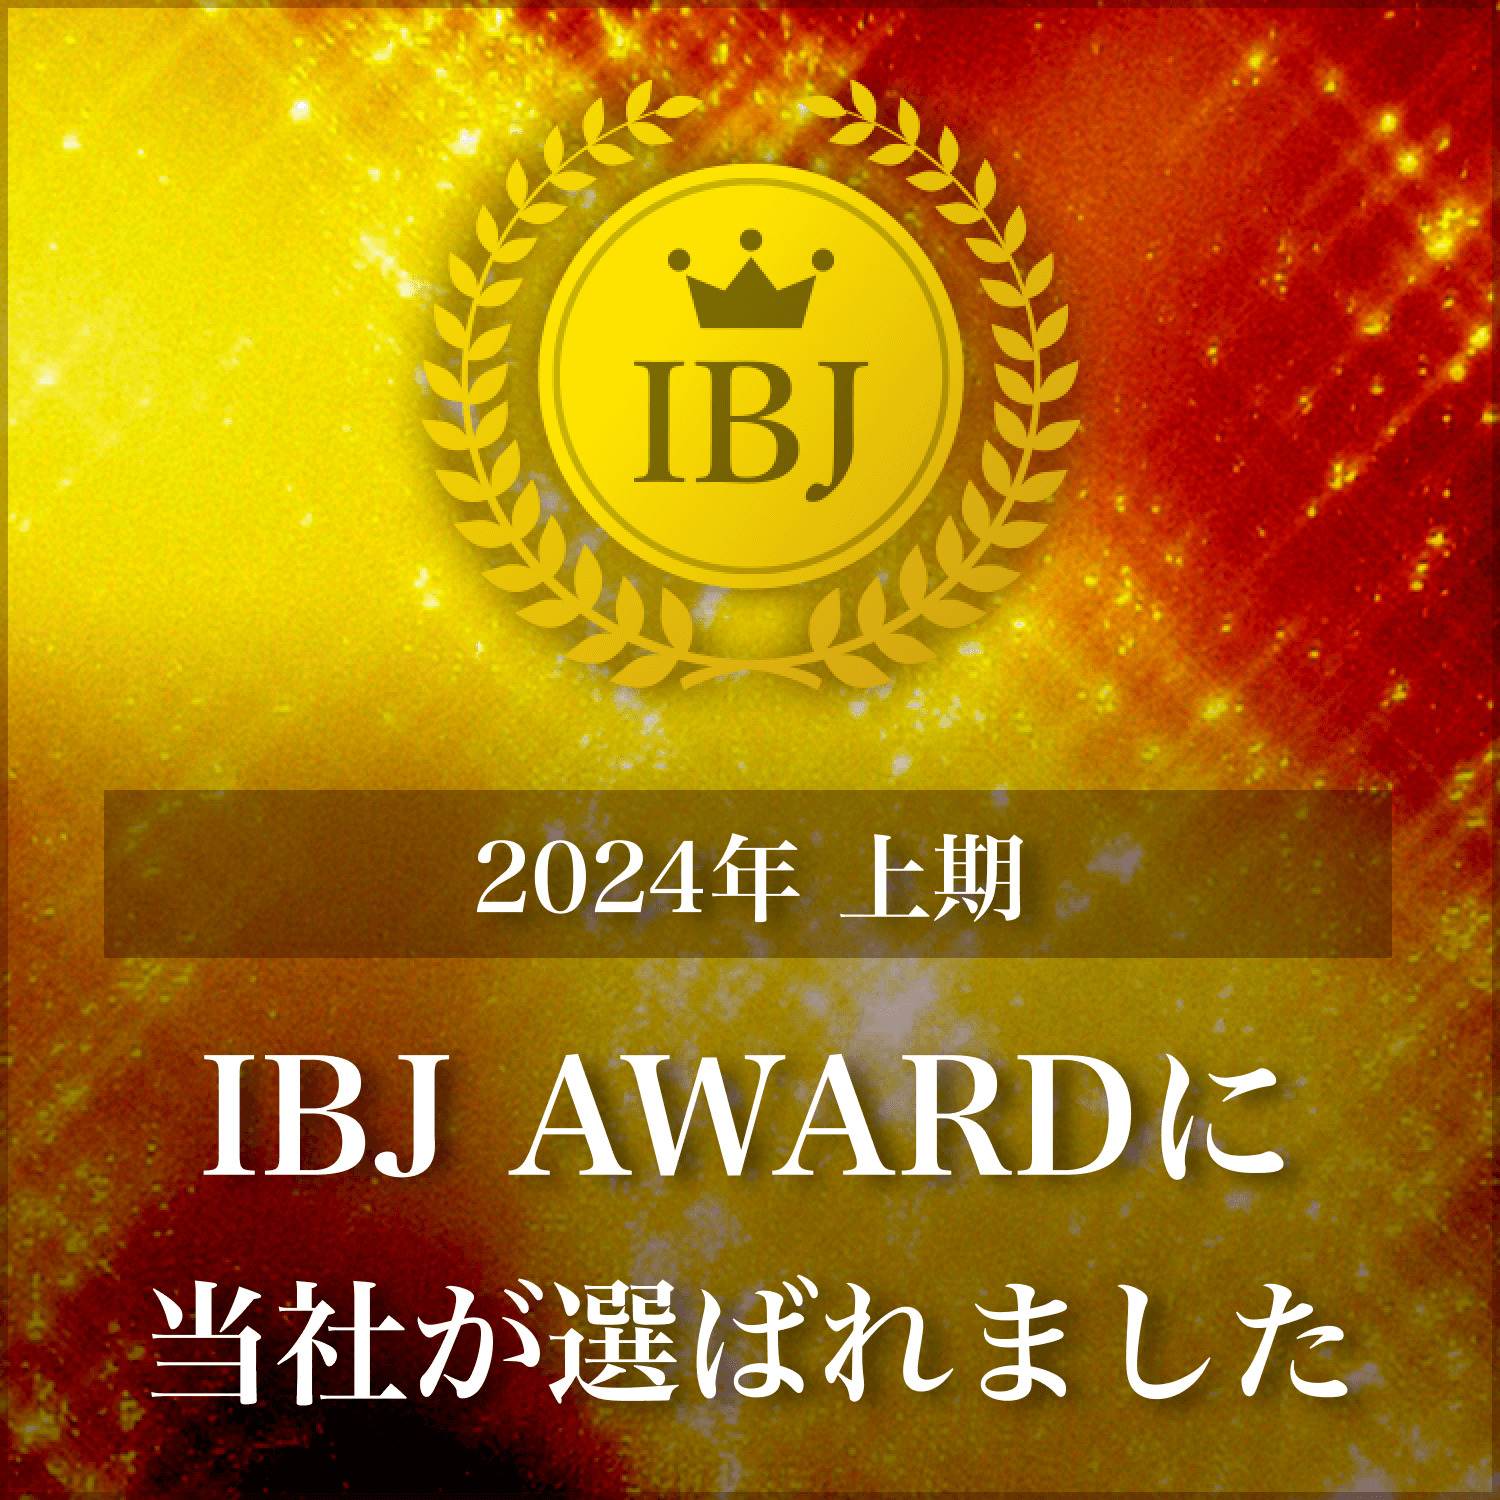 【日本結婚相談所連盟（IBJ）】 2024年上期 IBJ AWARD 受賞いたしました！